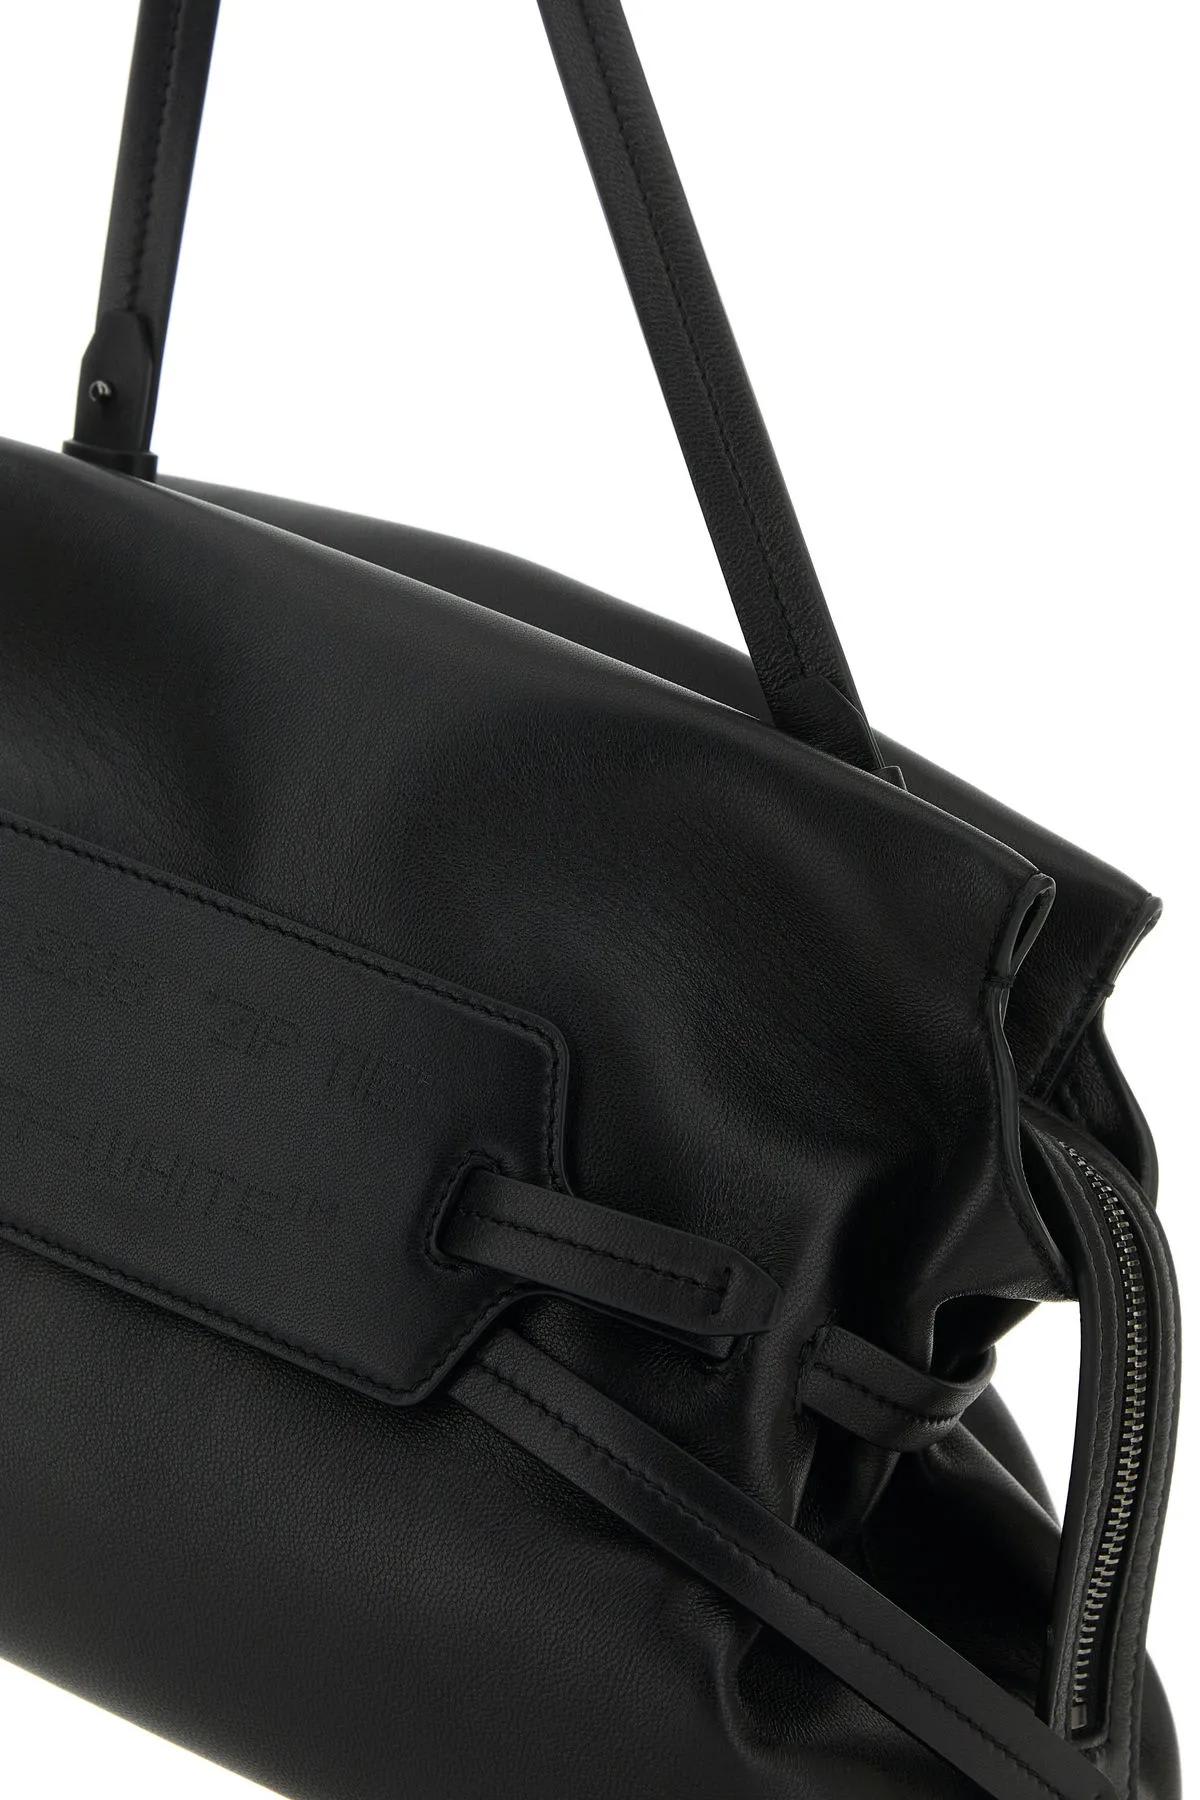 Shop Off-white Black Leather Shoulder Bag